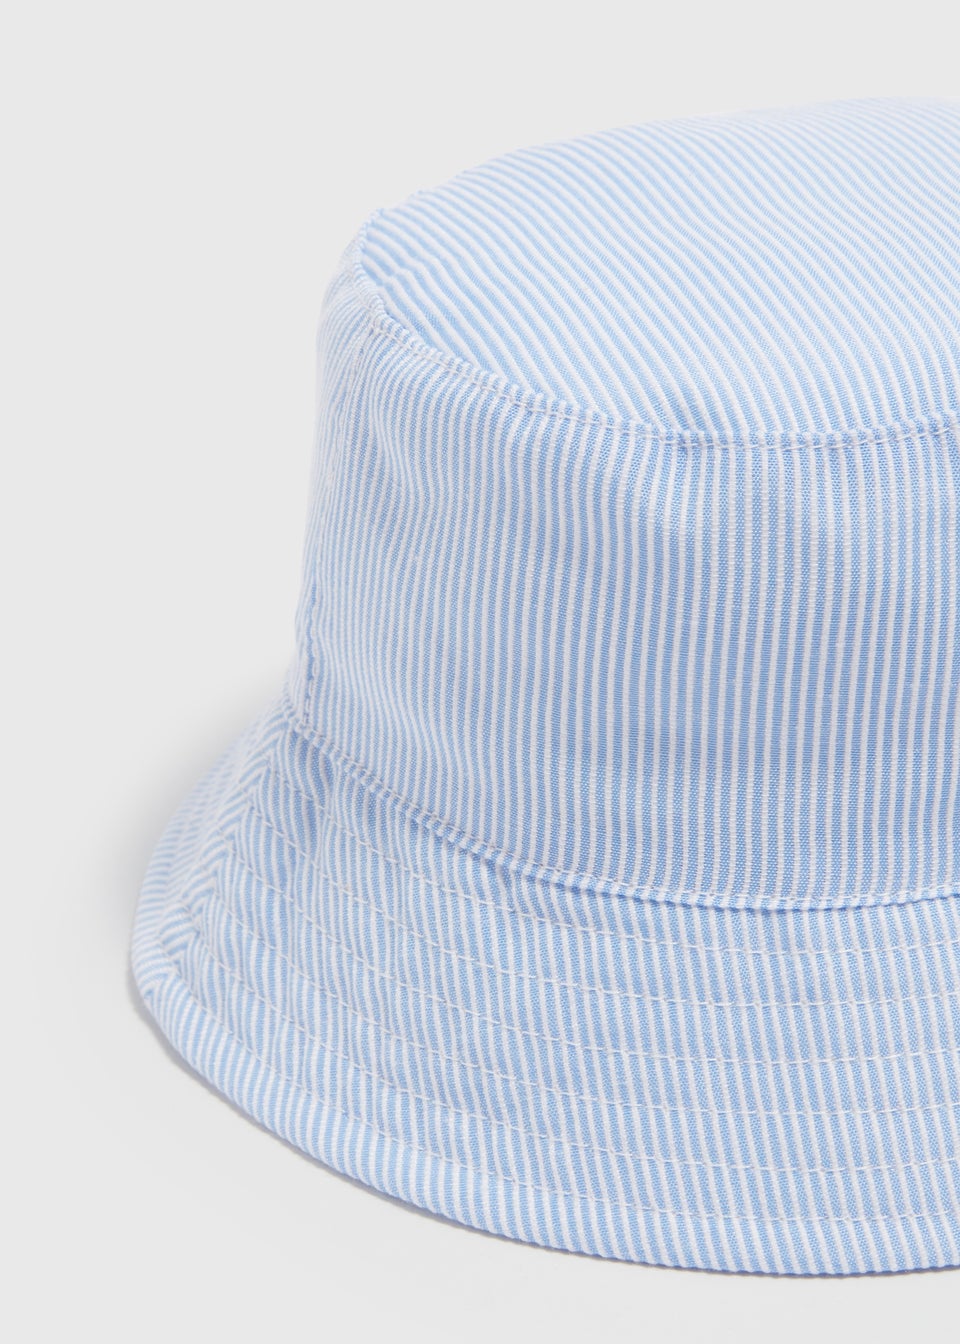 Baby Blue Stripe Bucket Hat (Newborn-24mths)